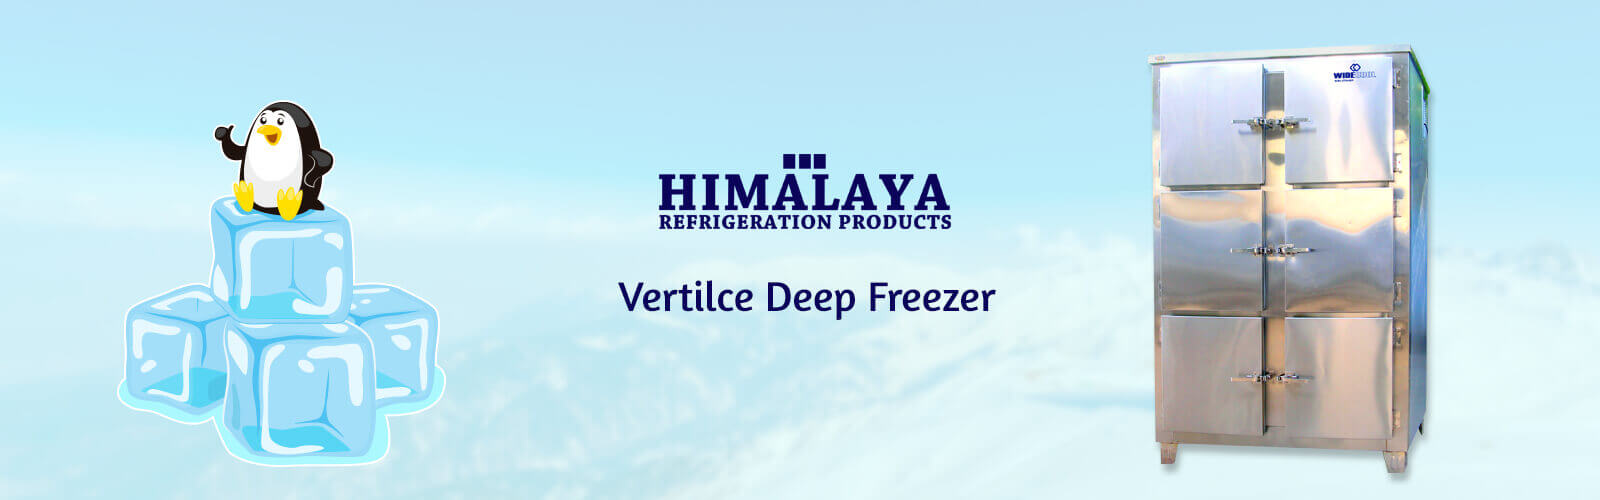 Verticle Deep Freezer